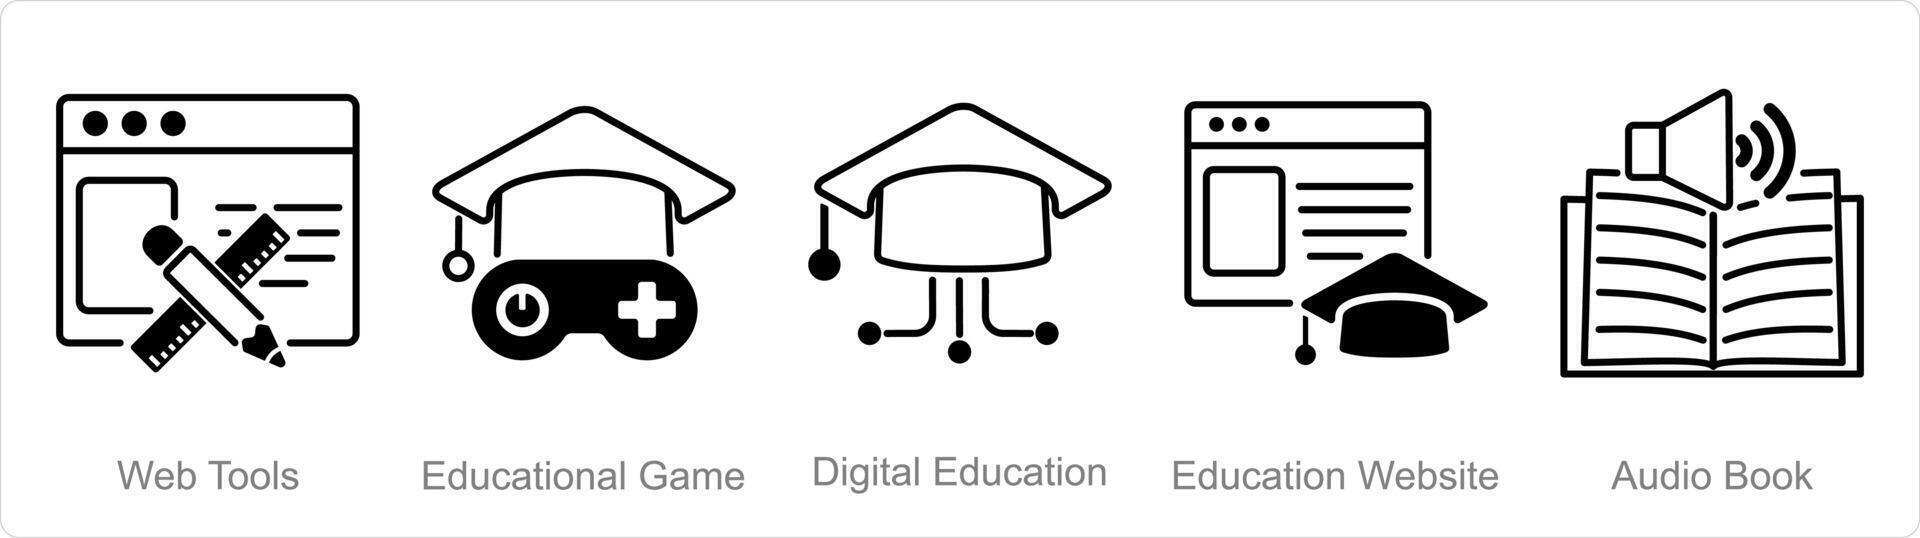 un' impostato di 5 educazione online icone come ragnatela Strumenti, educativo gioco, digitale formazione scolastica vettore